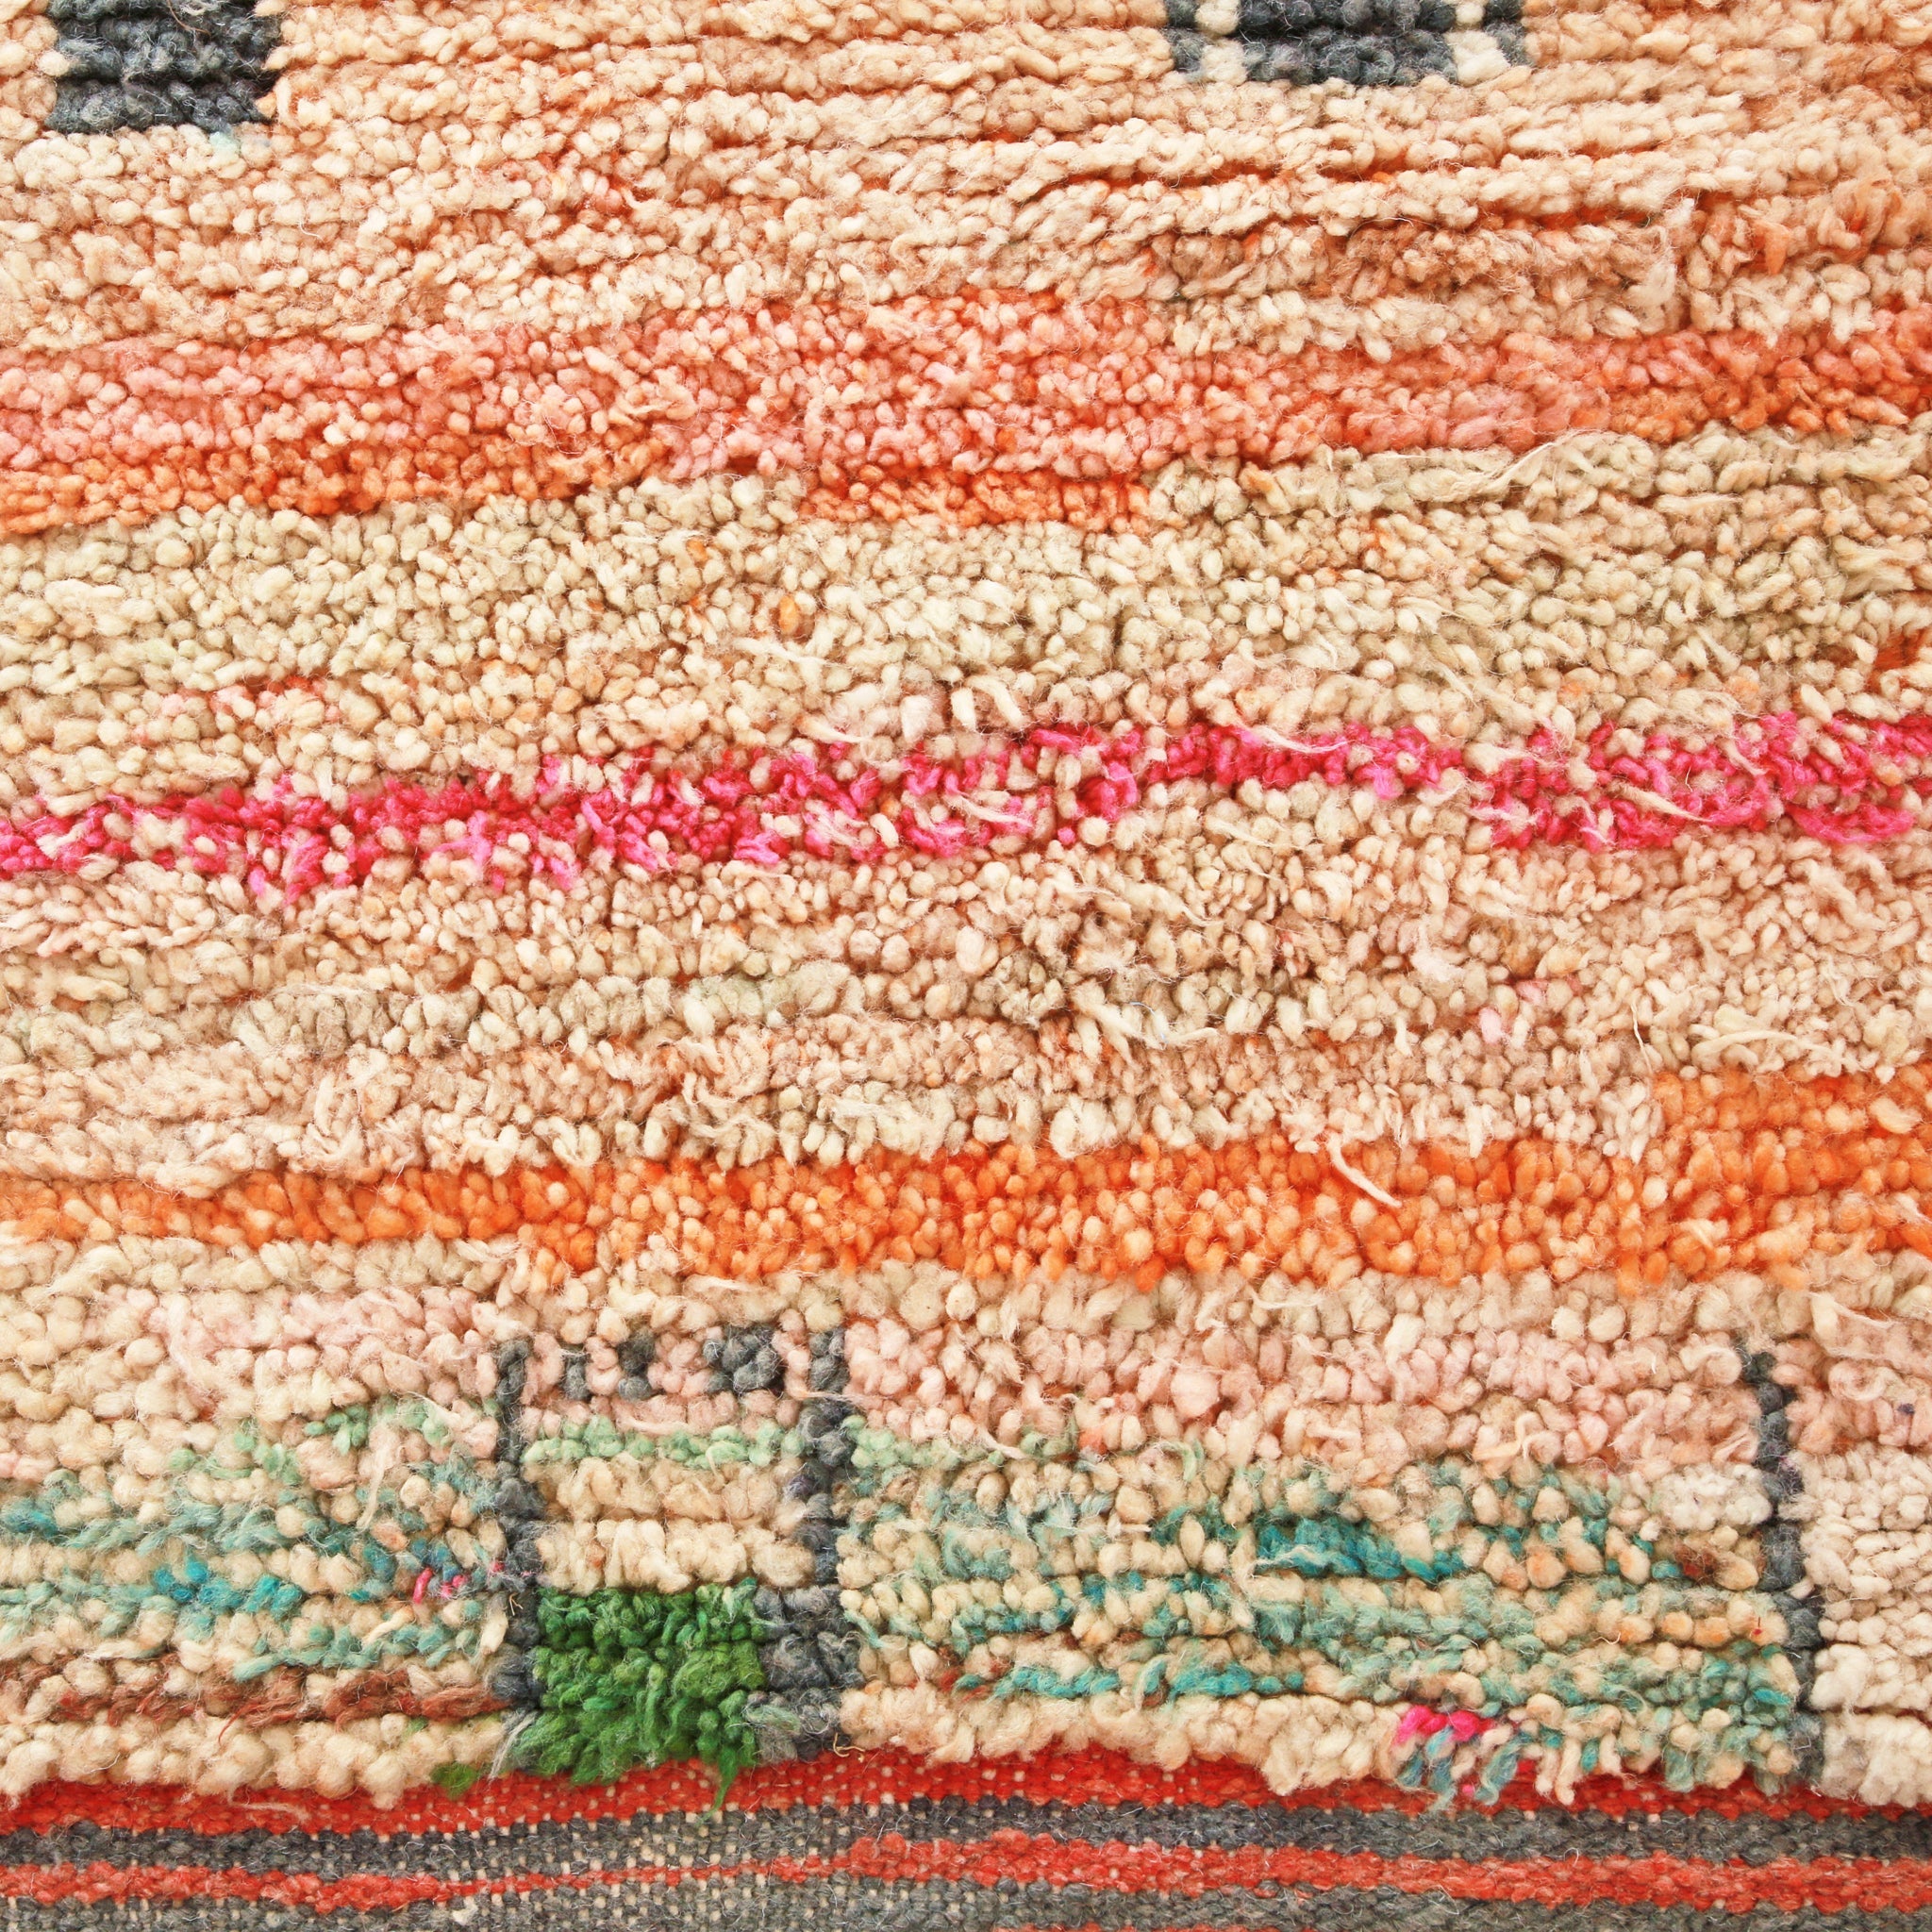 dettaglio del lato del tappero boujaad che mette in risalto la lana utilizzata per sua tessitura